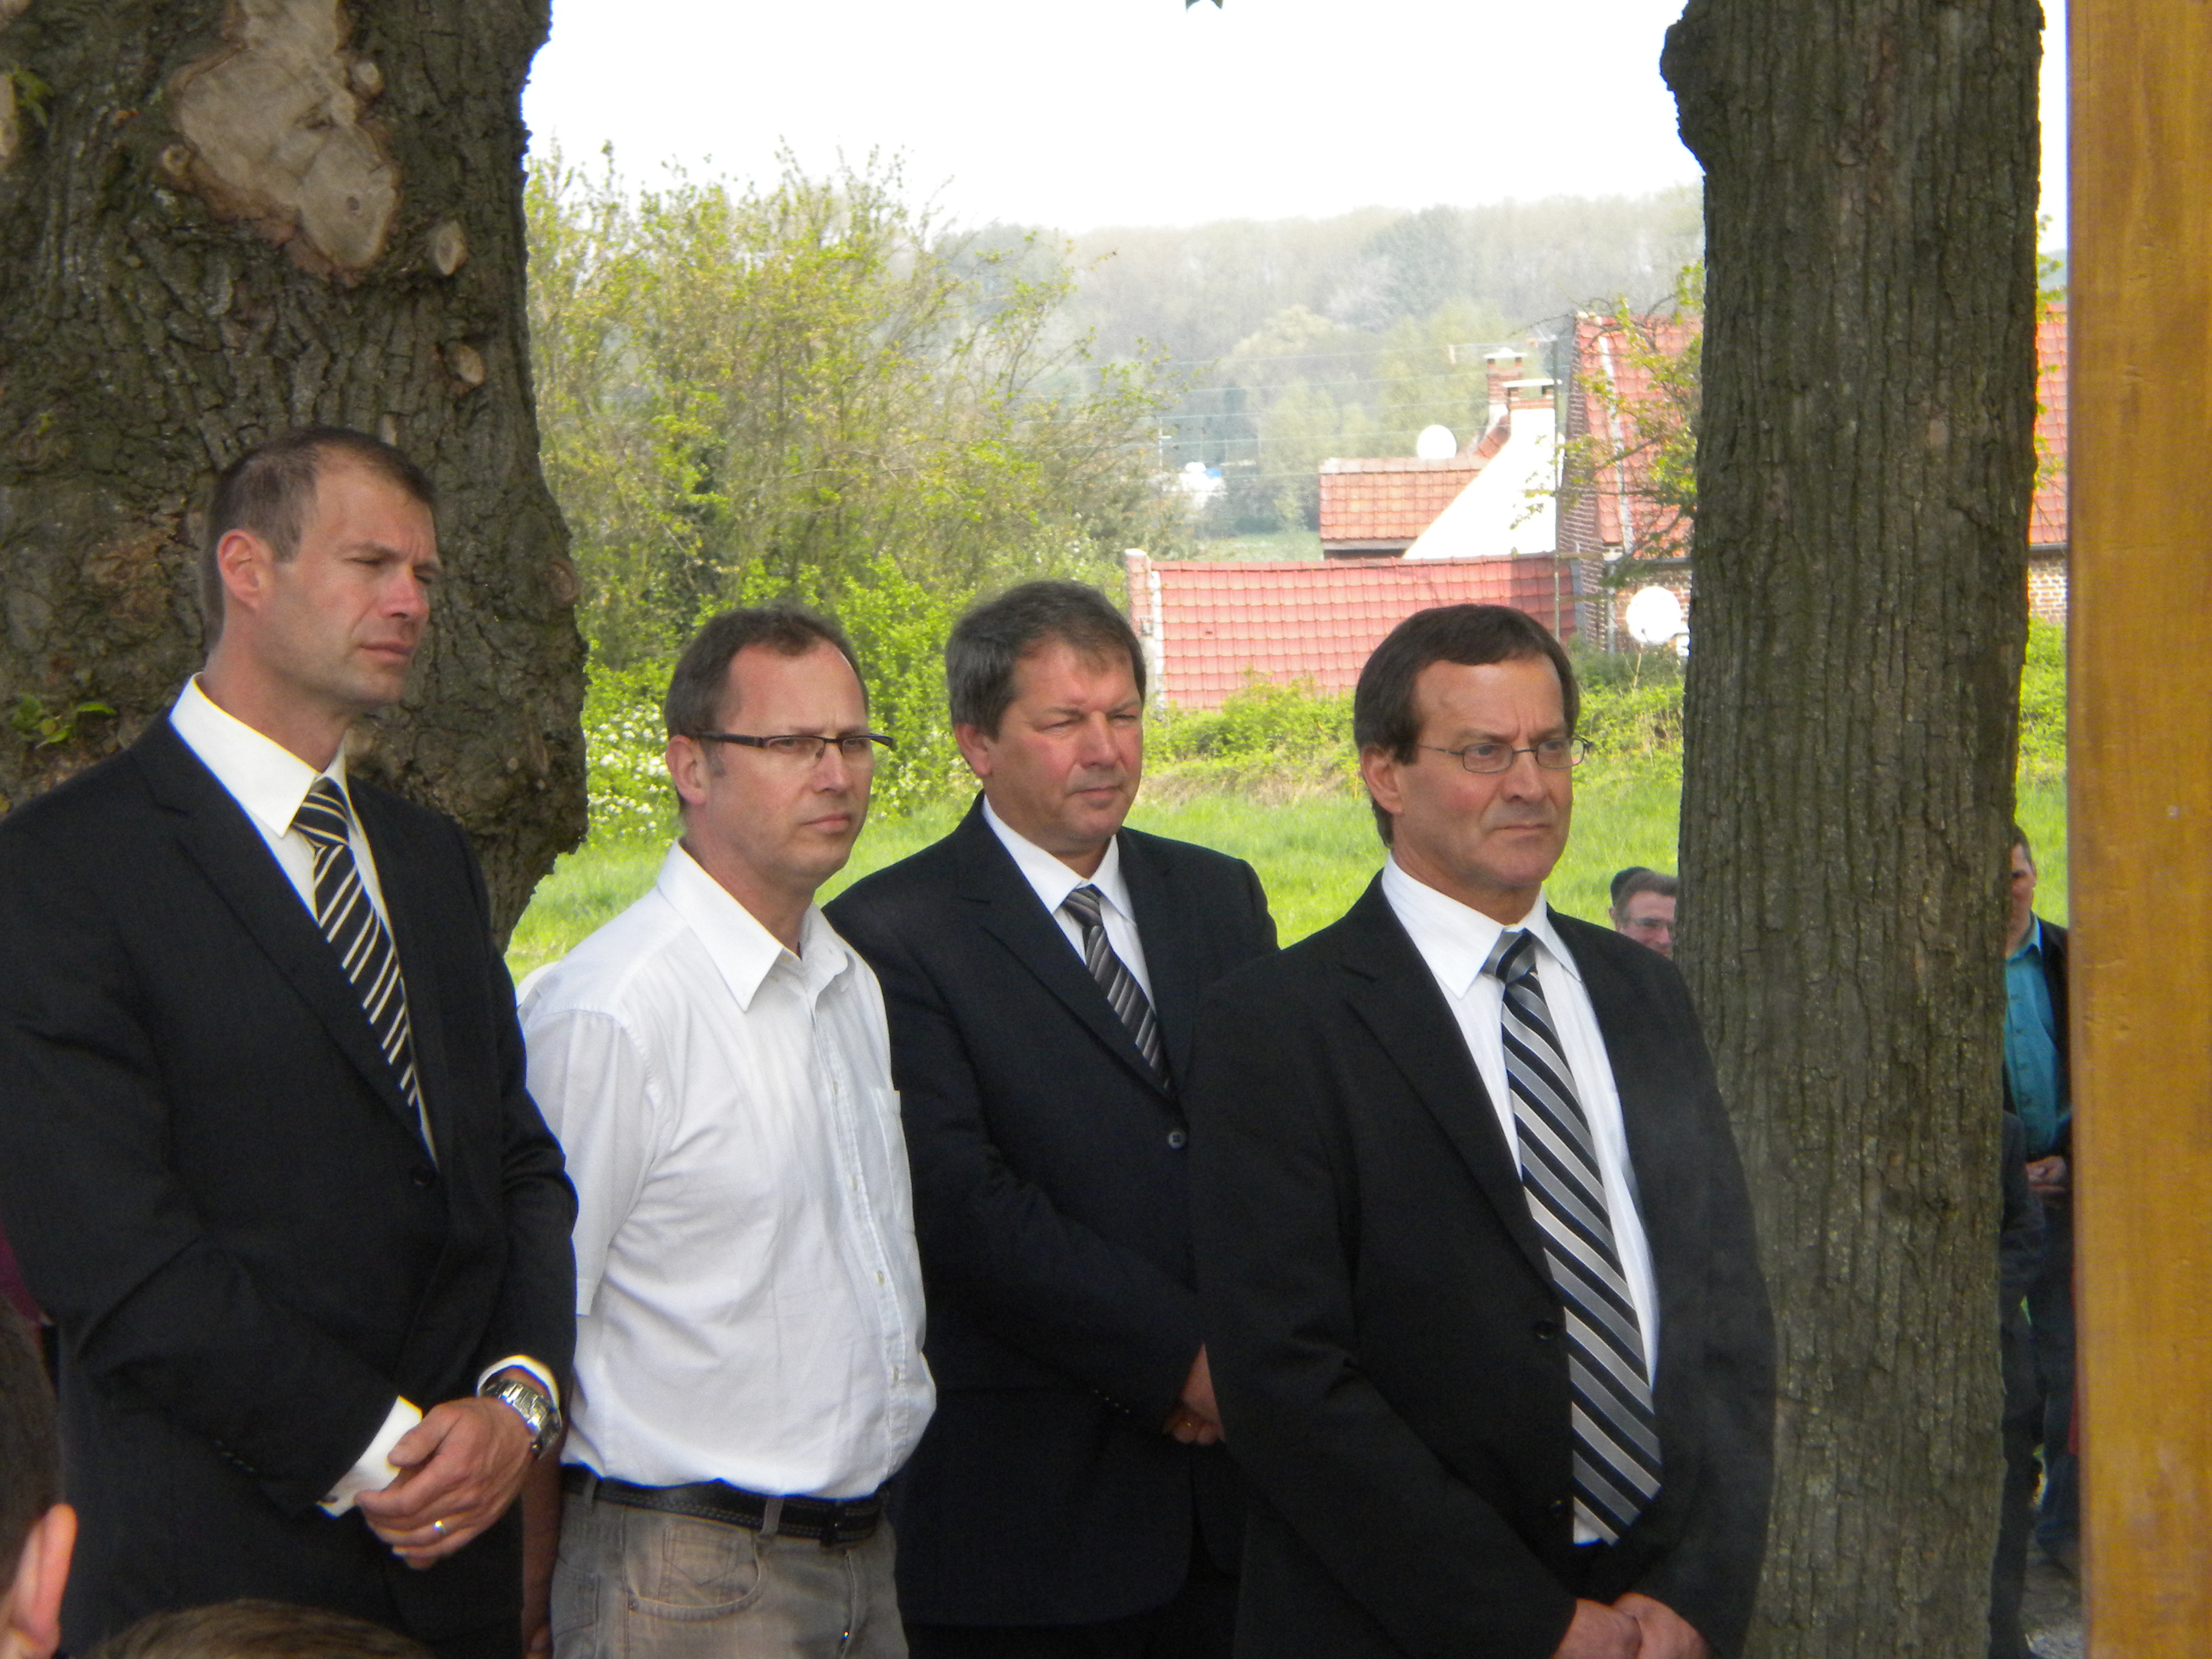 M le Maire (1er à droite) et sa délégation